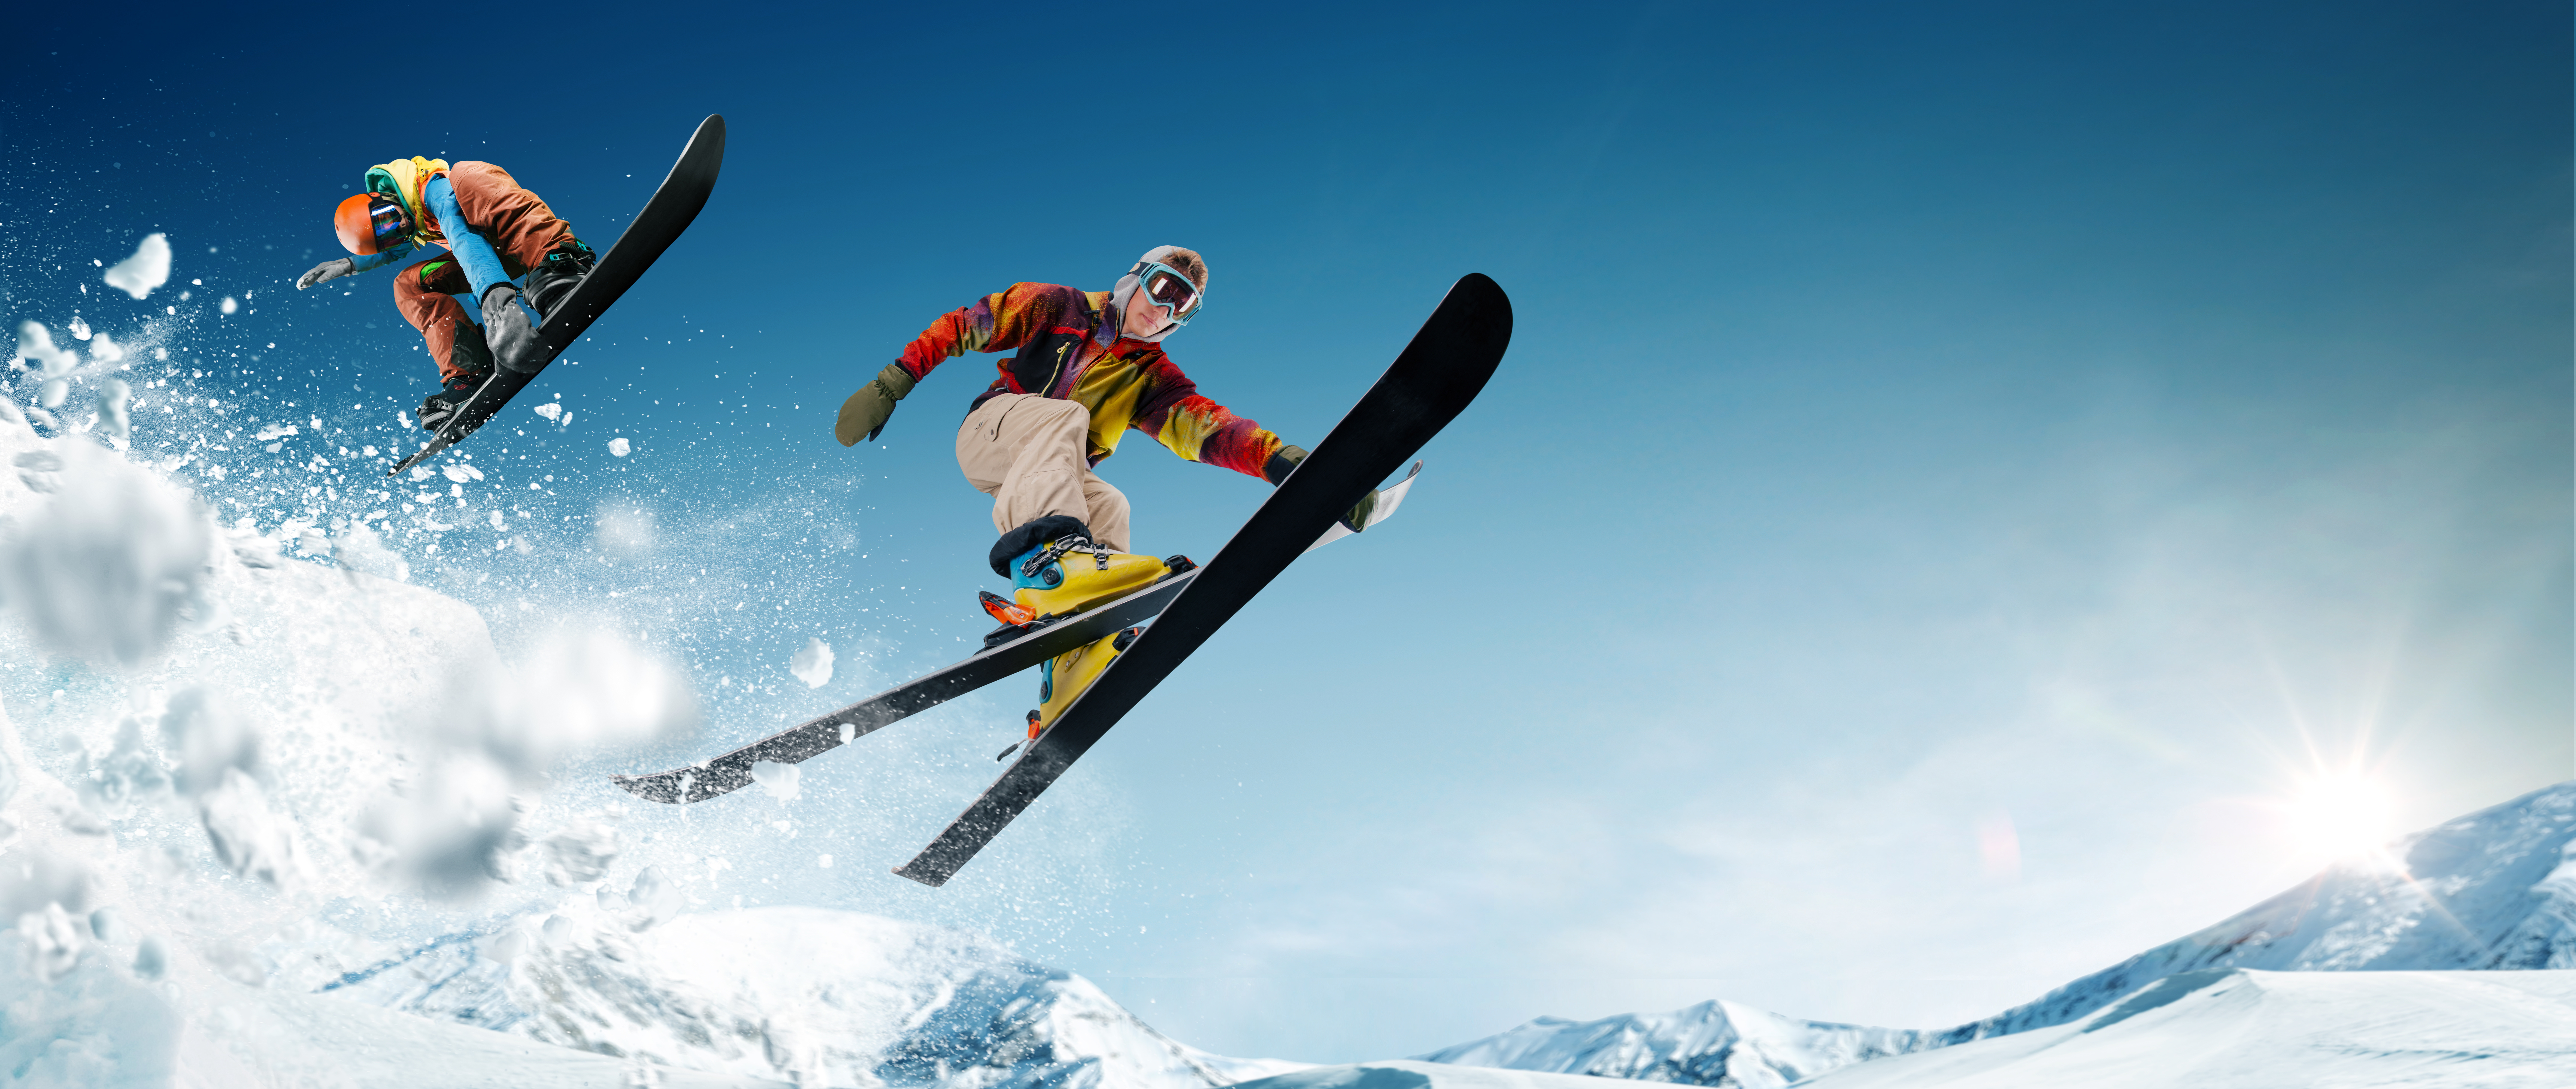 Czy warto wykupić ubezpieczenie turystyczne wyjeżdżając na narty/snowboard?